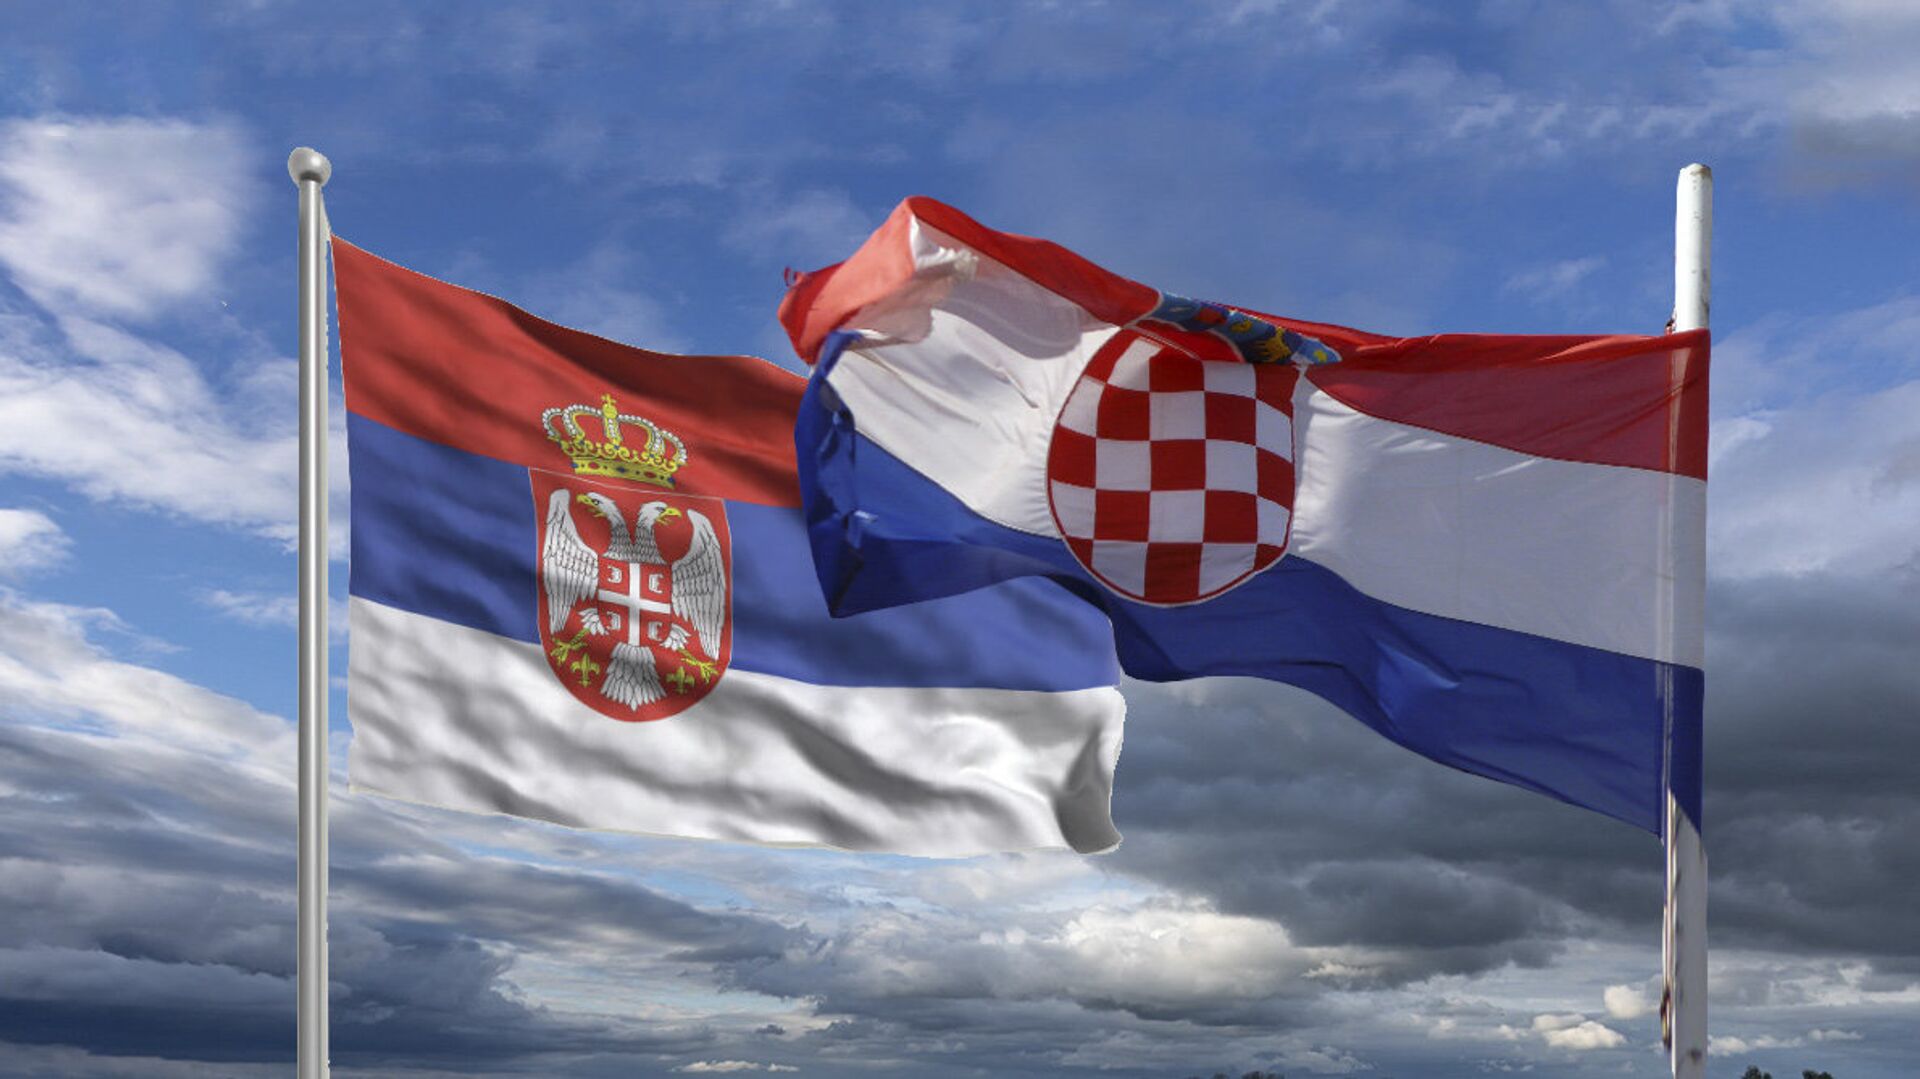 Srbija Hrvatska - zastave - Sputnik Srbija, 1920, 10.02.2022